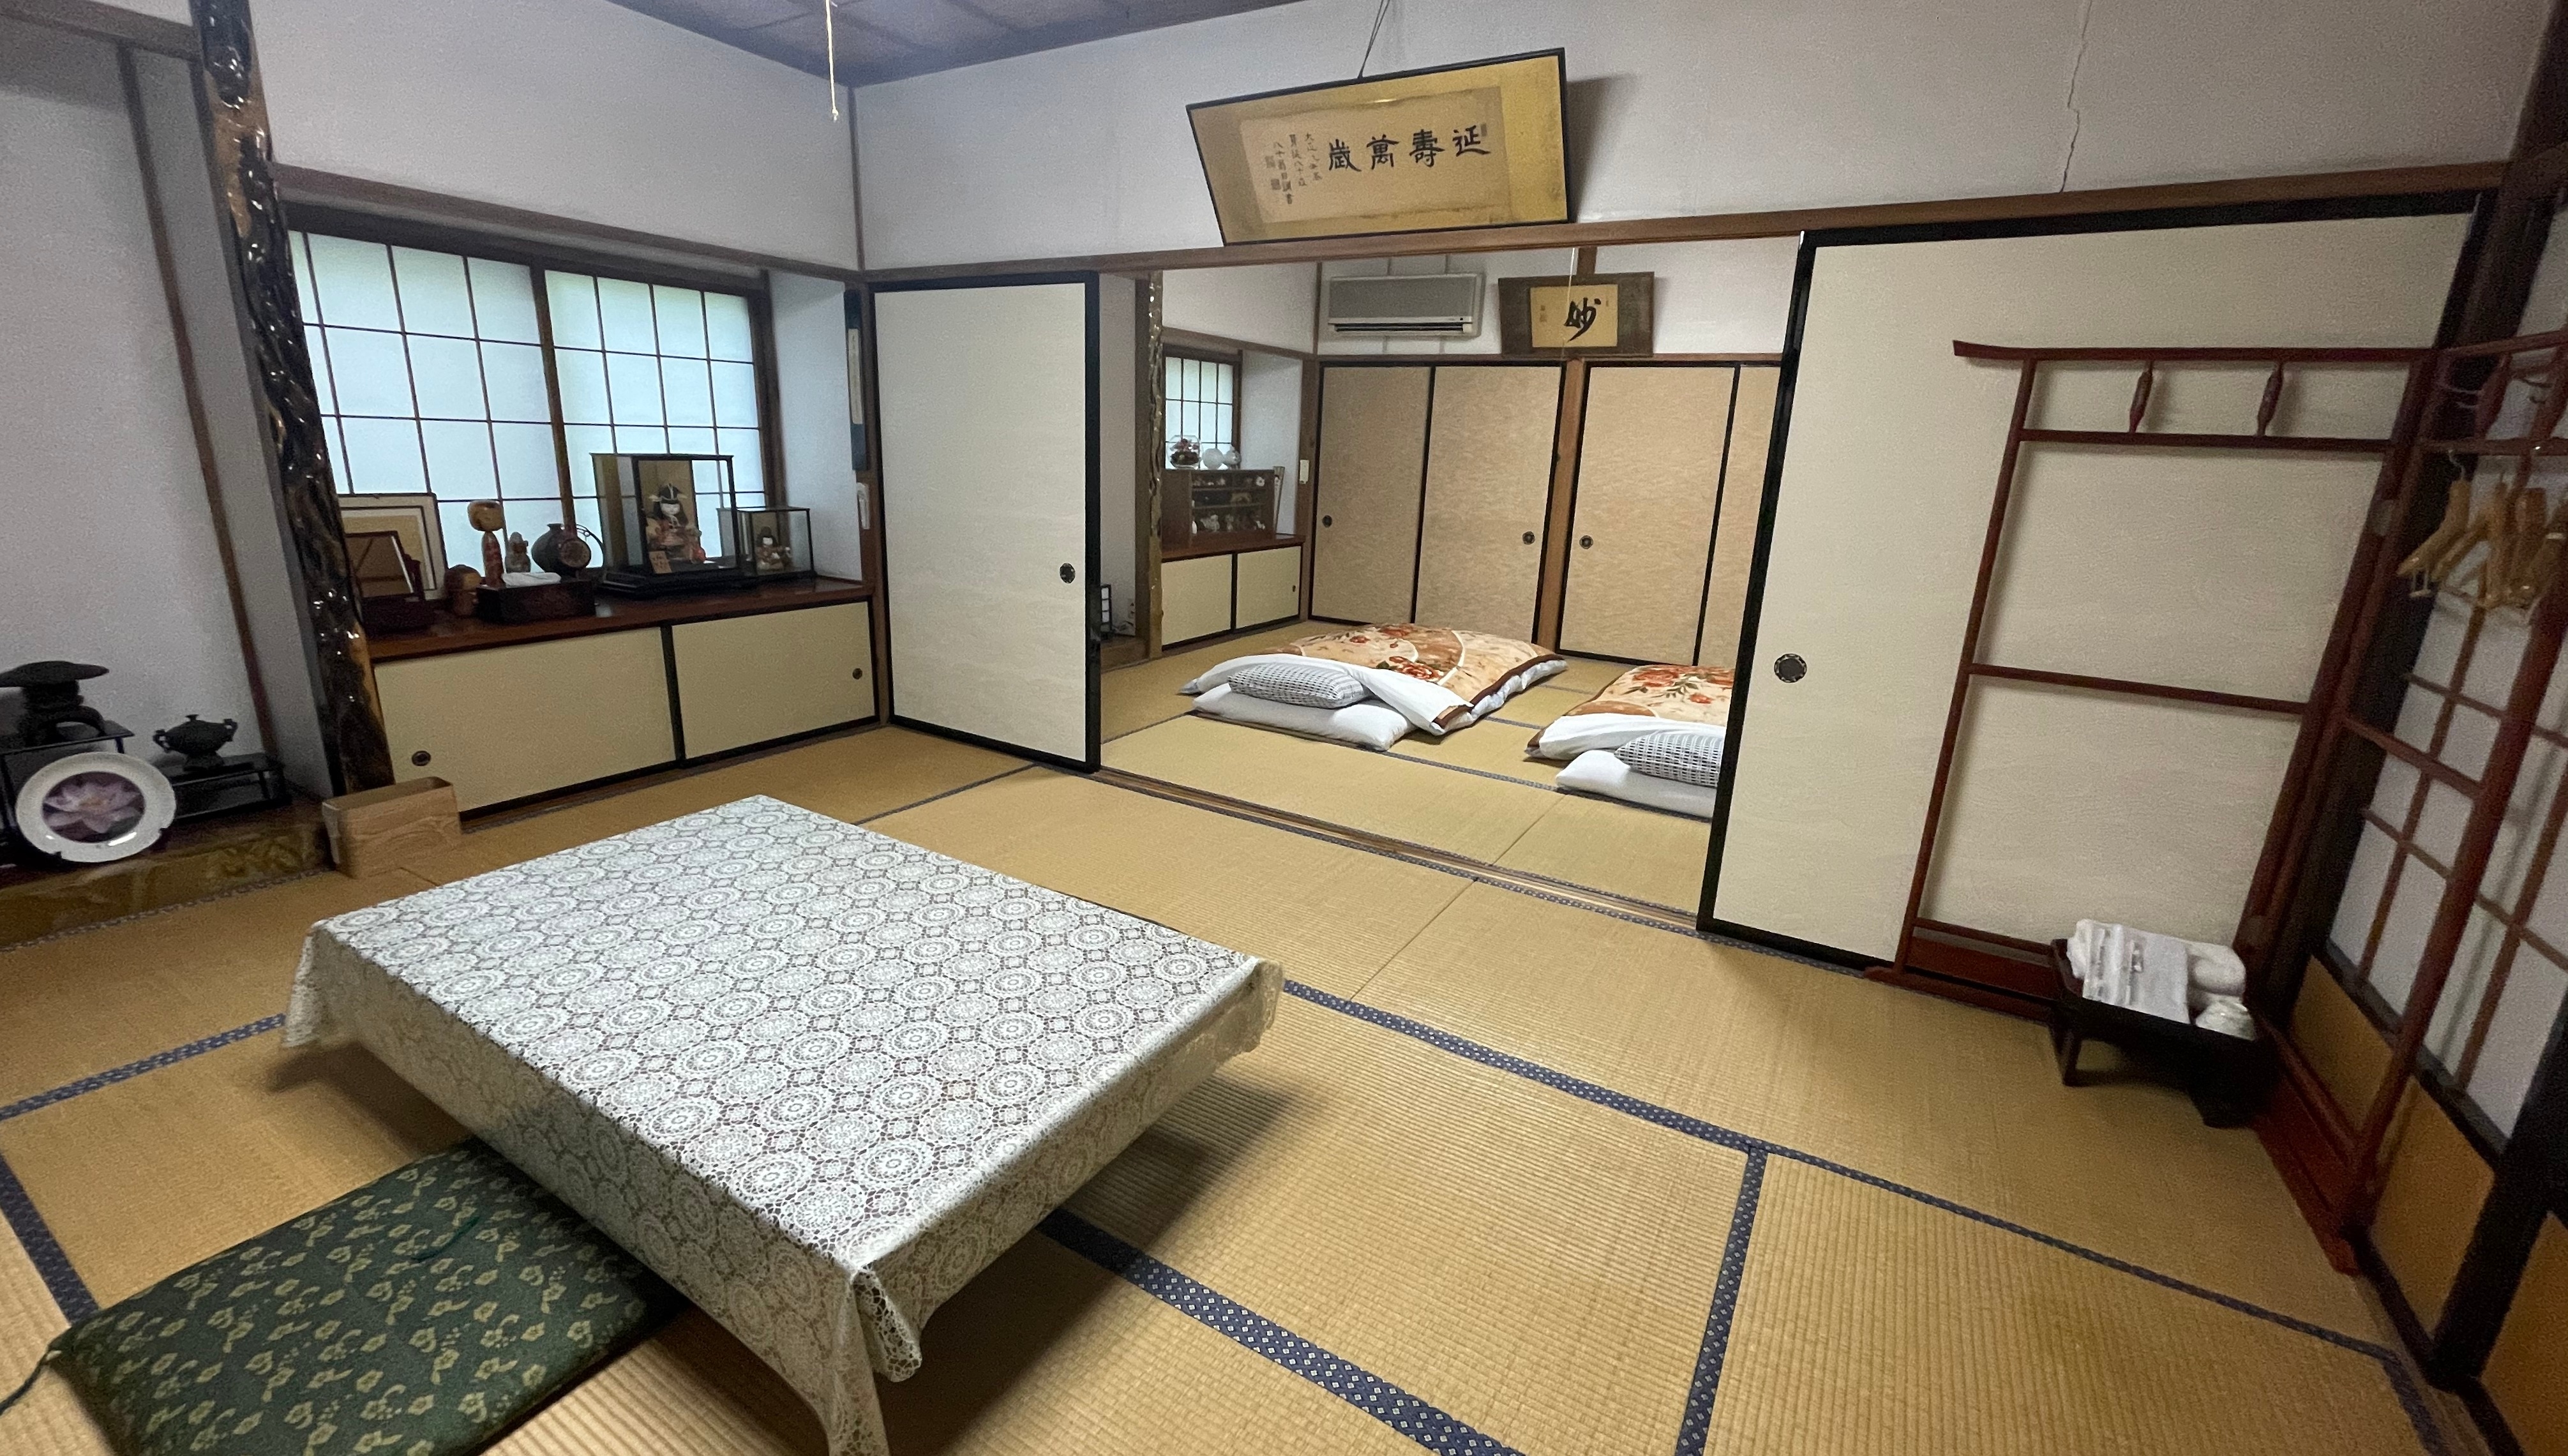 【独立日式房间】享受私人空间的日式房间-20张榻榻米